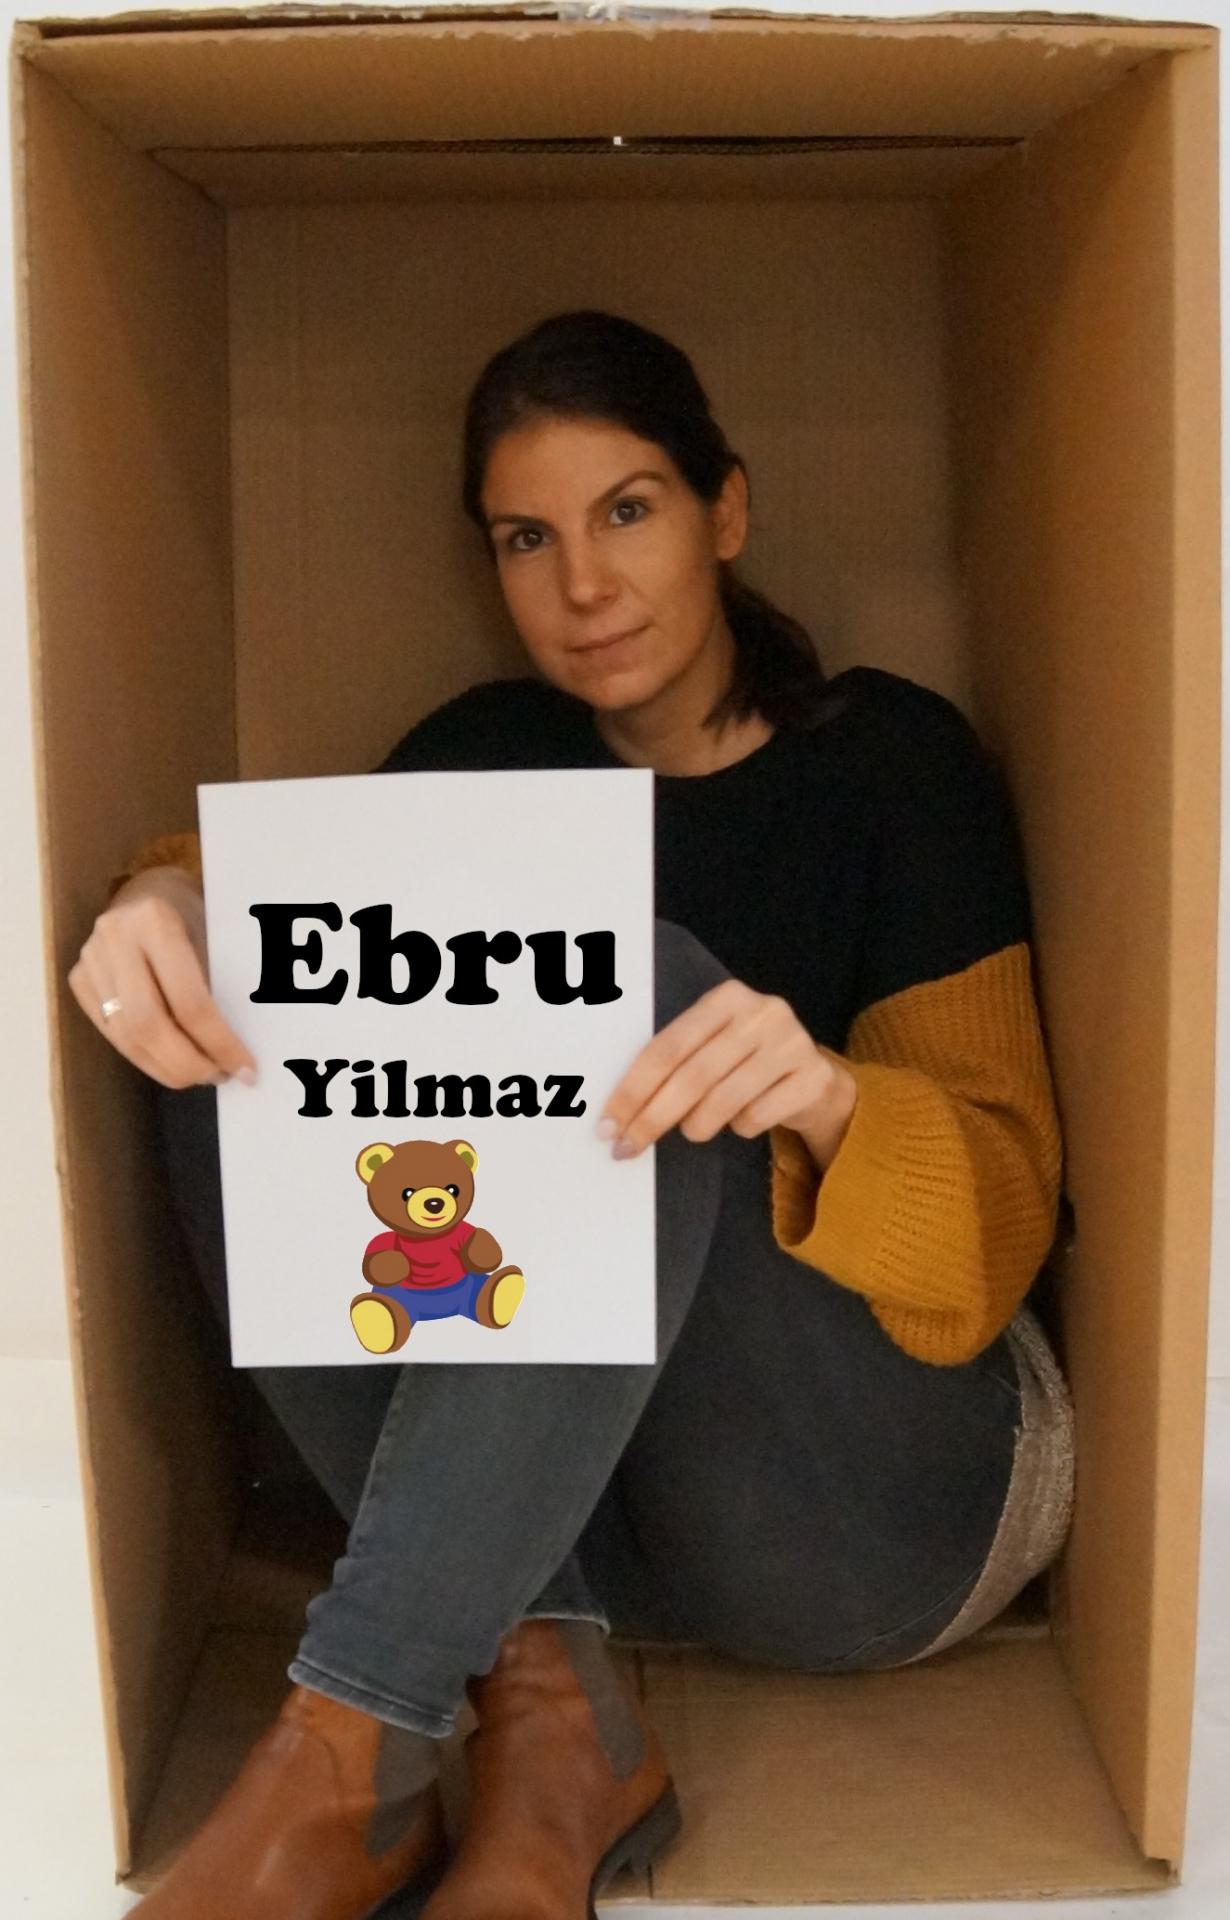 Ebru Yilmaz